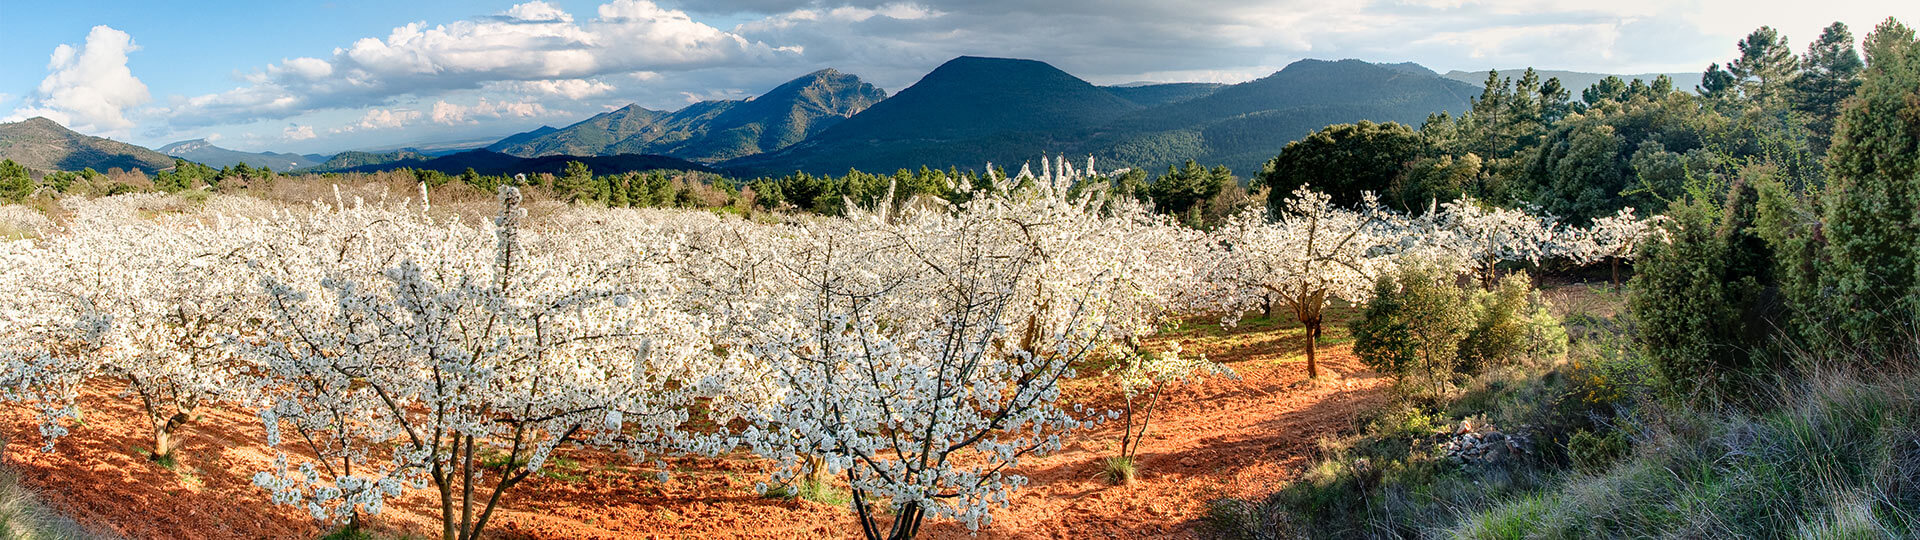  Ciliegi in fiore nella Valle del Jerte, Estremadura